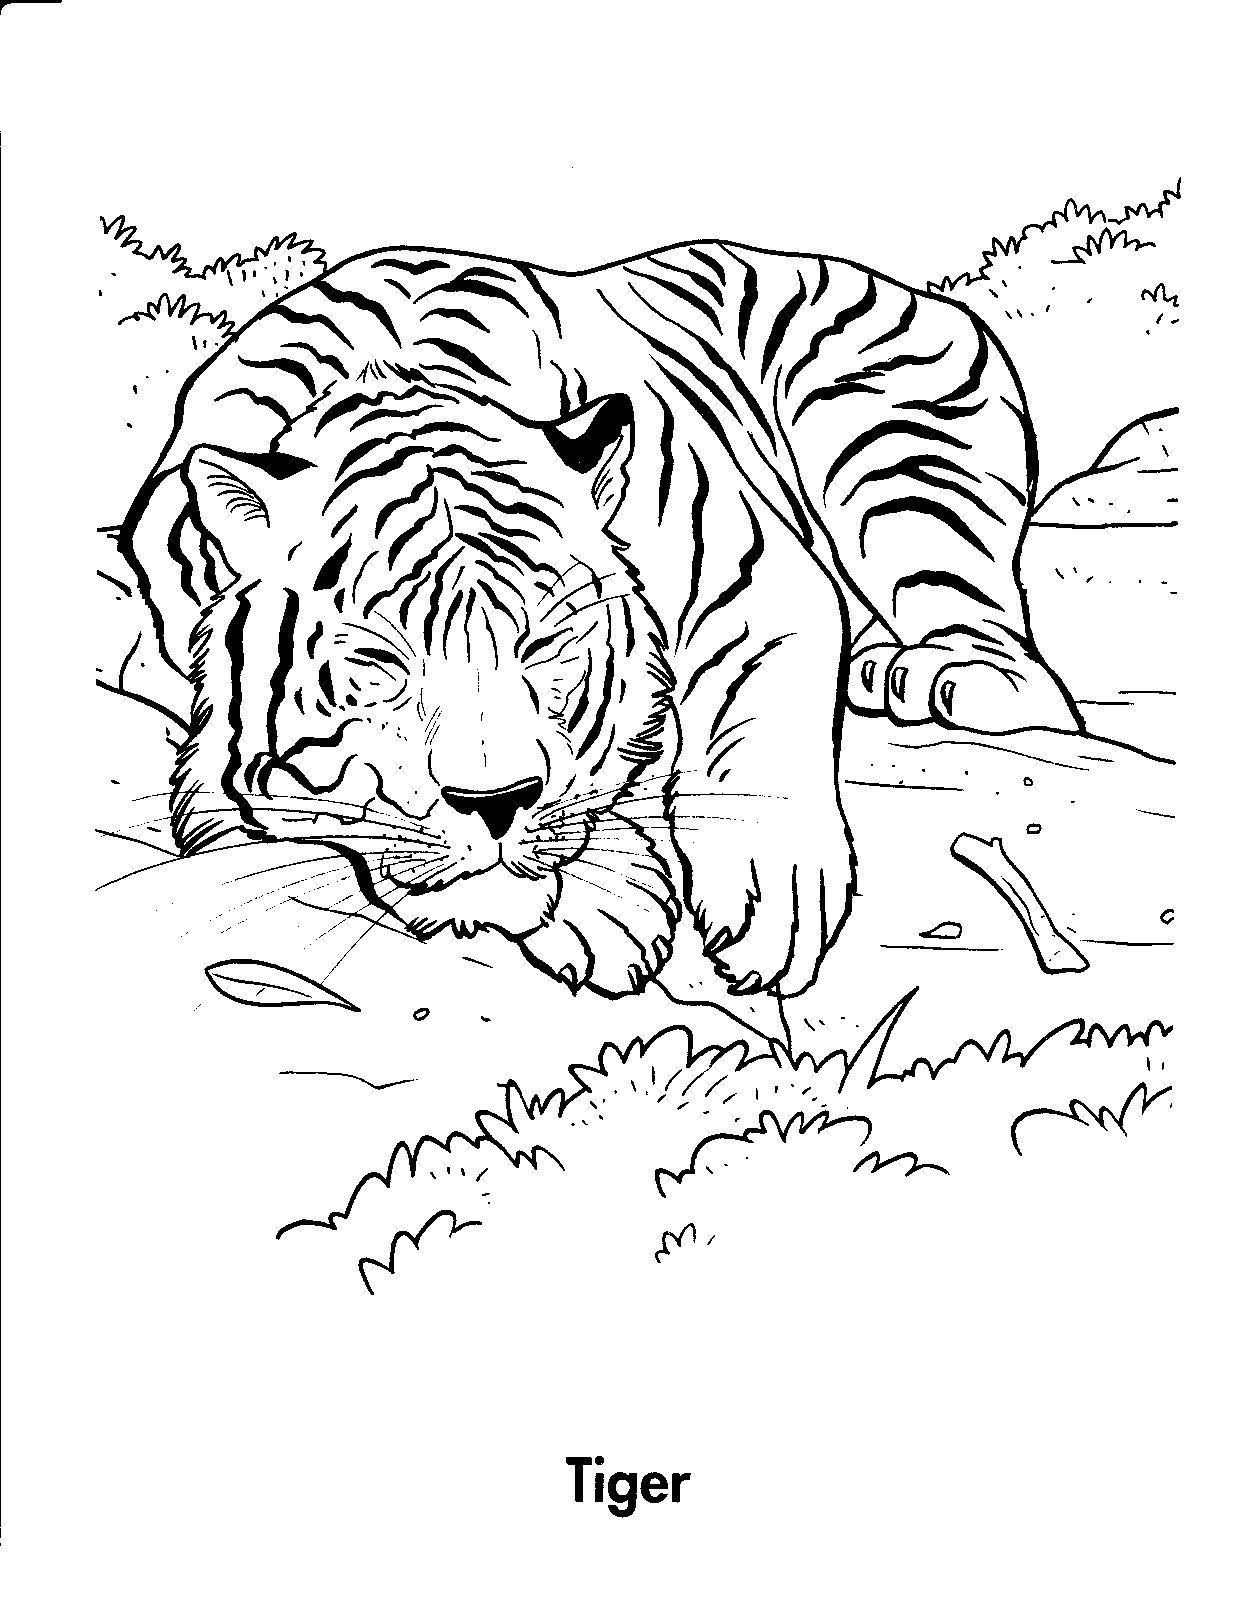 Trang màu của một con hổ đang ngủ